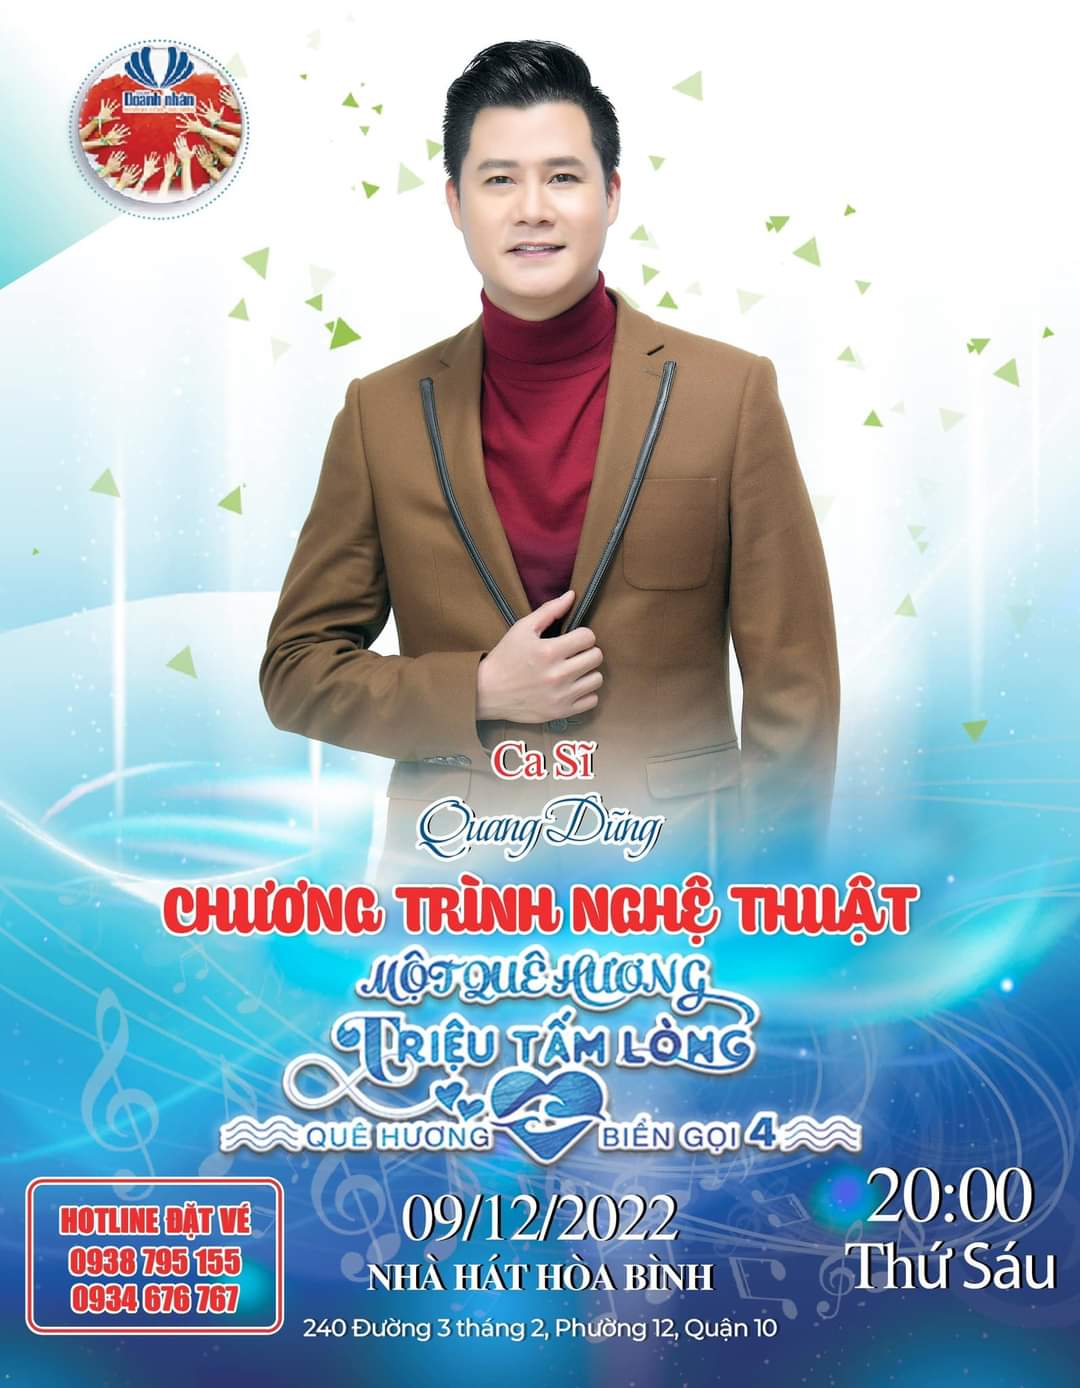 QHBG 2022 Quang Dung